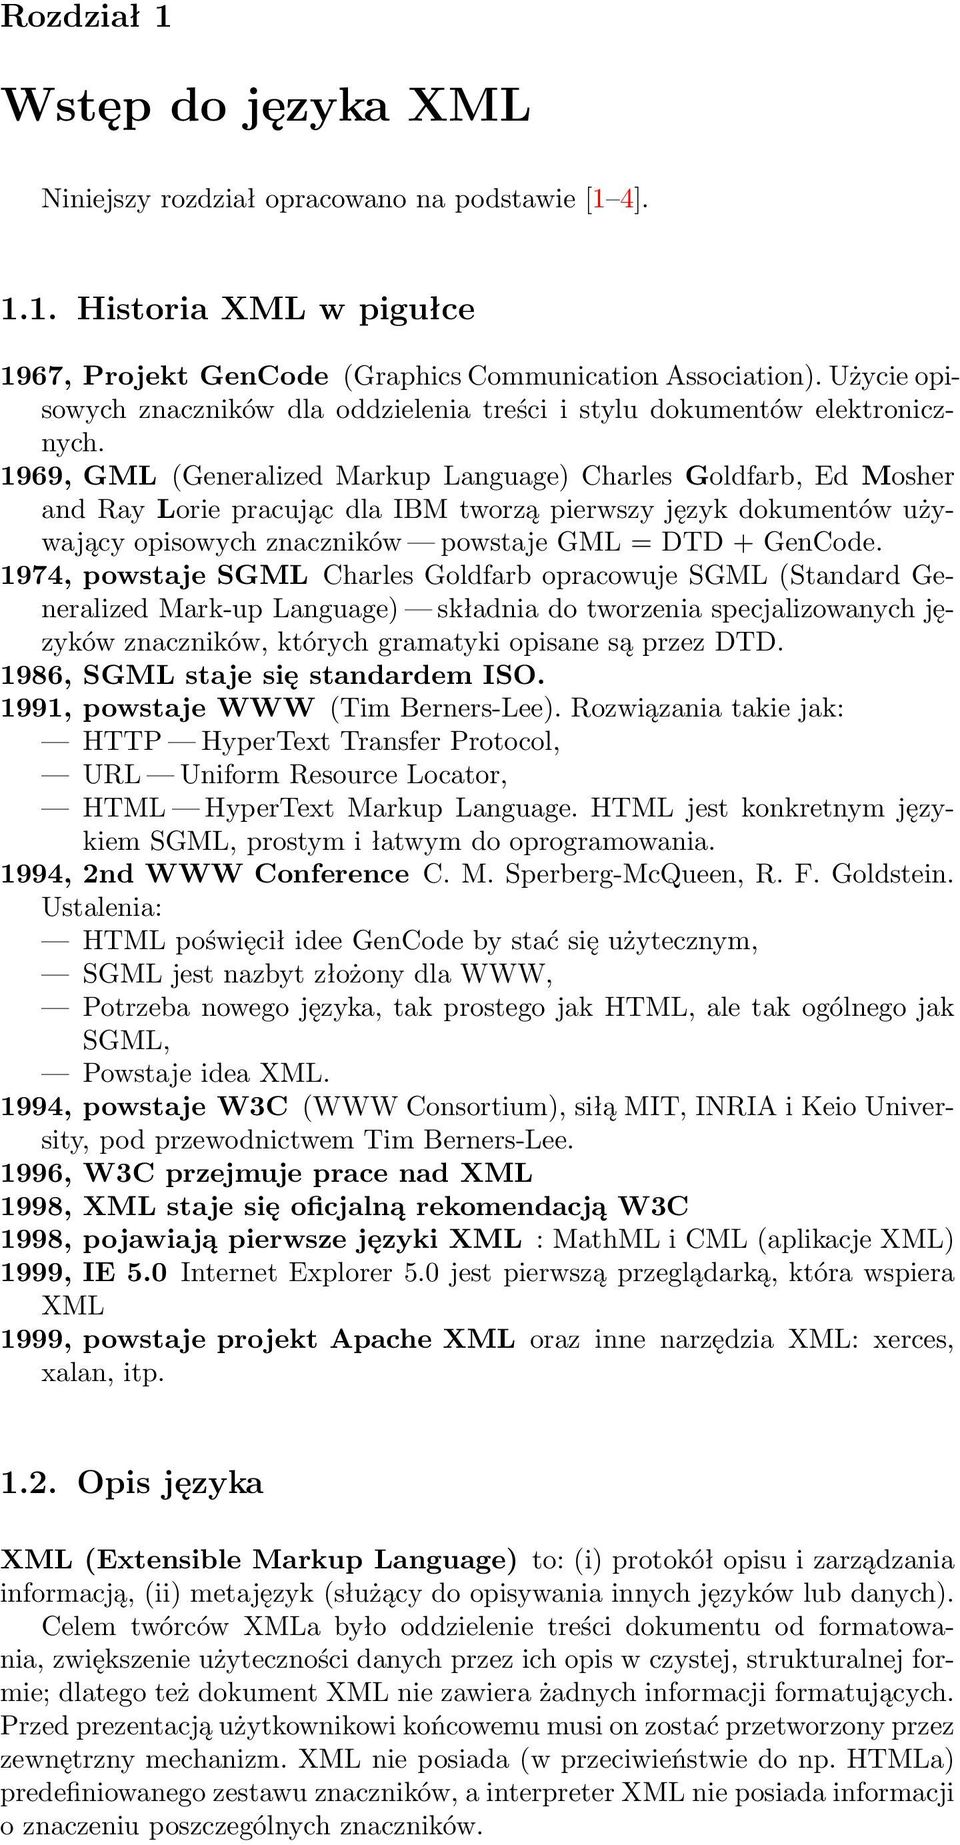 1969, GML (Generalized Markup Language) Charles Goldfarb, Ed Mosher and Ray Lorie pracując dla IBM tworzą pierwszy język dokumentów używający opisowych znaczników powstaje GML = DTD + GenCode.